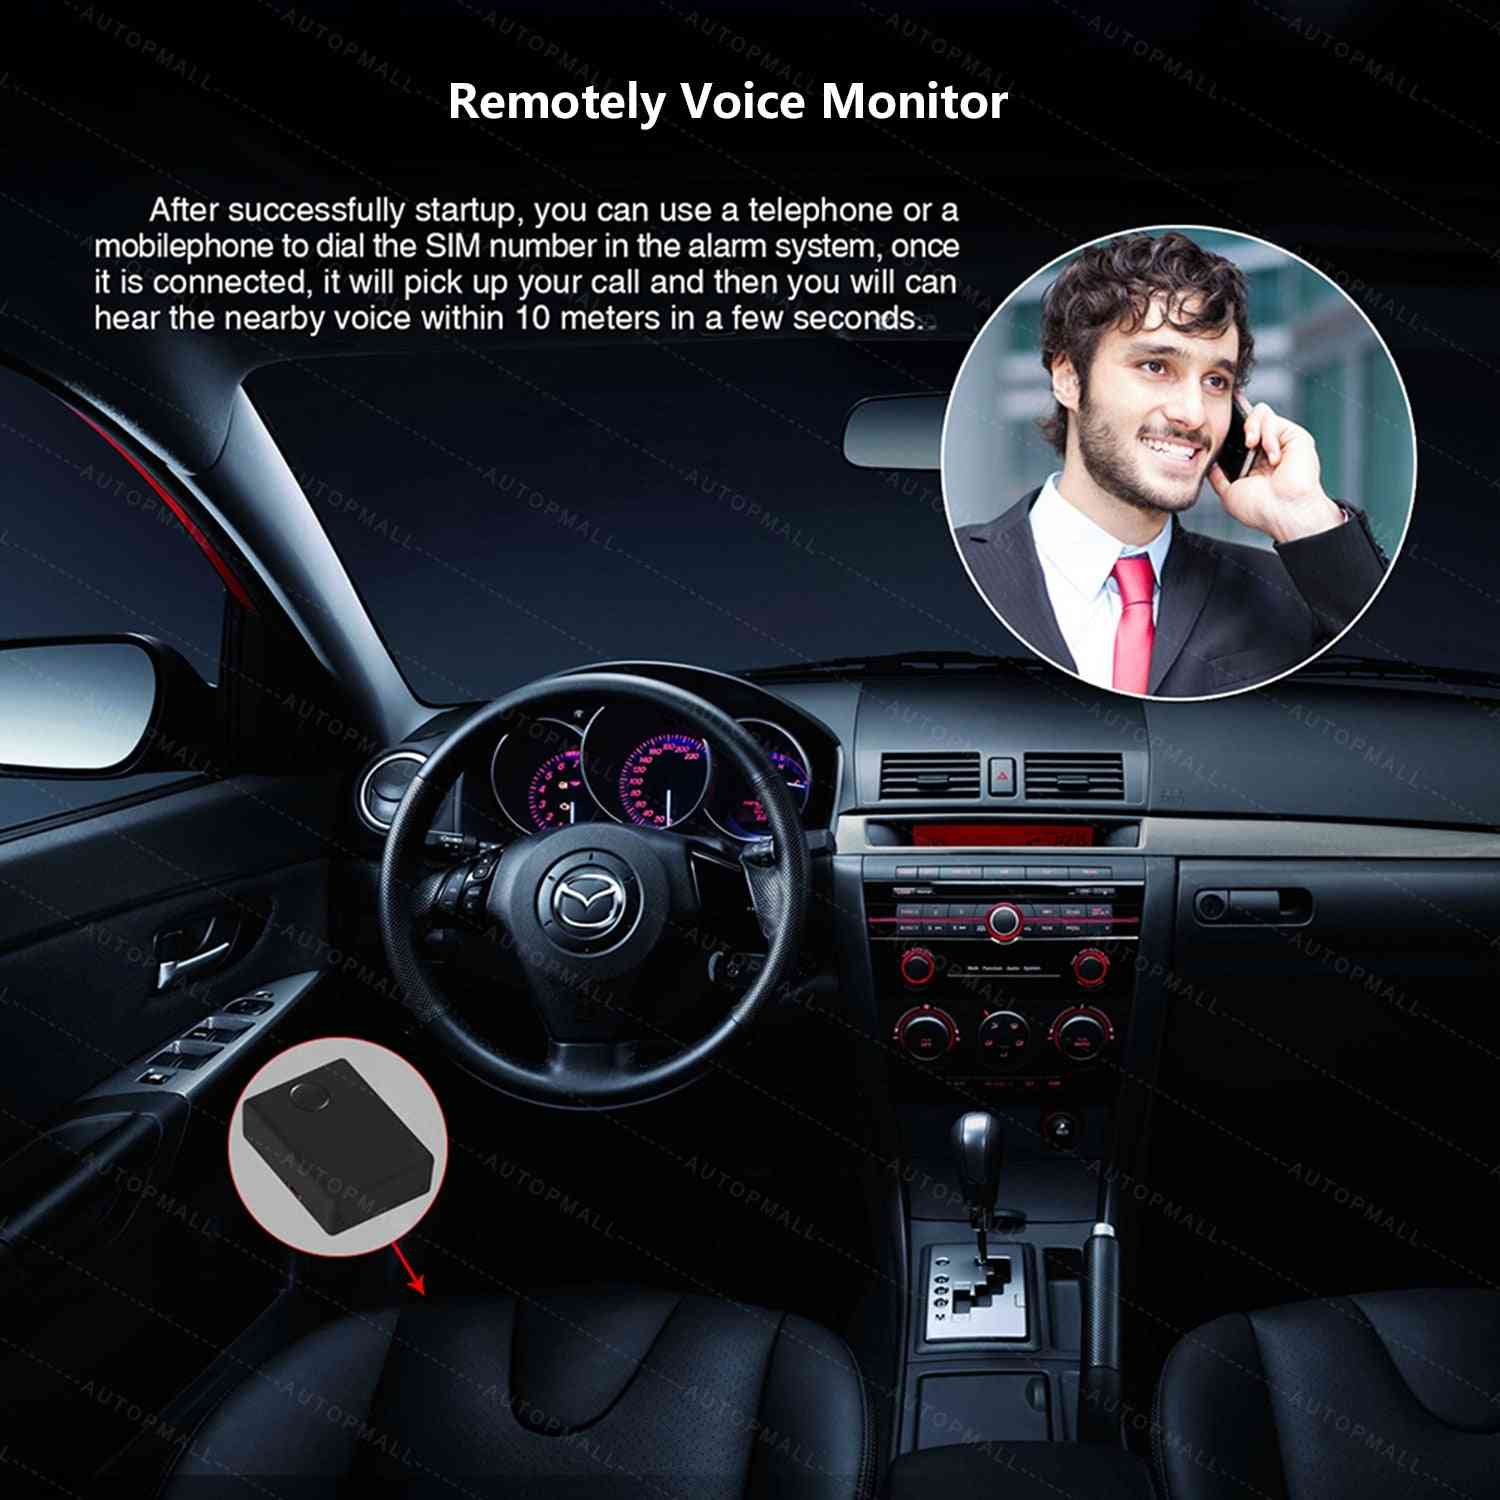 Sorveglianza monitor audio vocale, rilevamento scheda sim, risposta e composizione automatiche, attivazione vocale personale del dispositivo